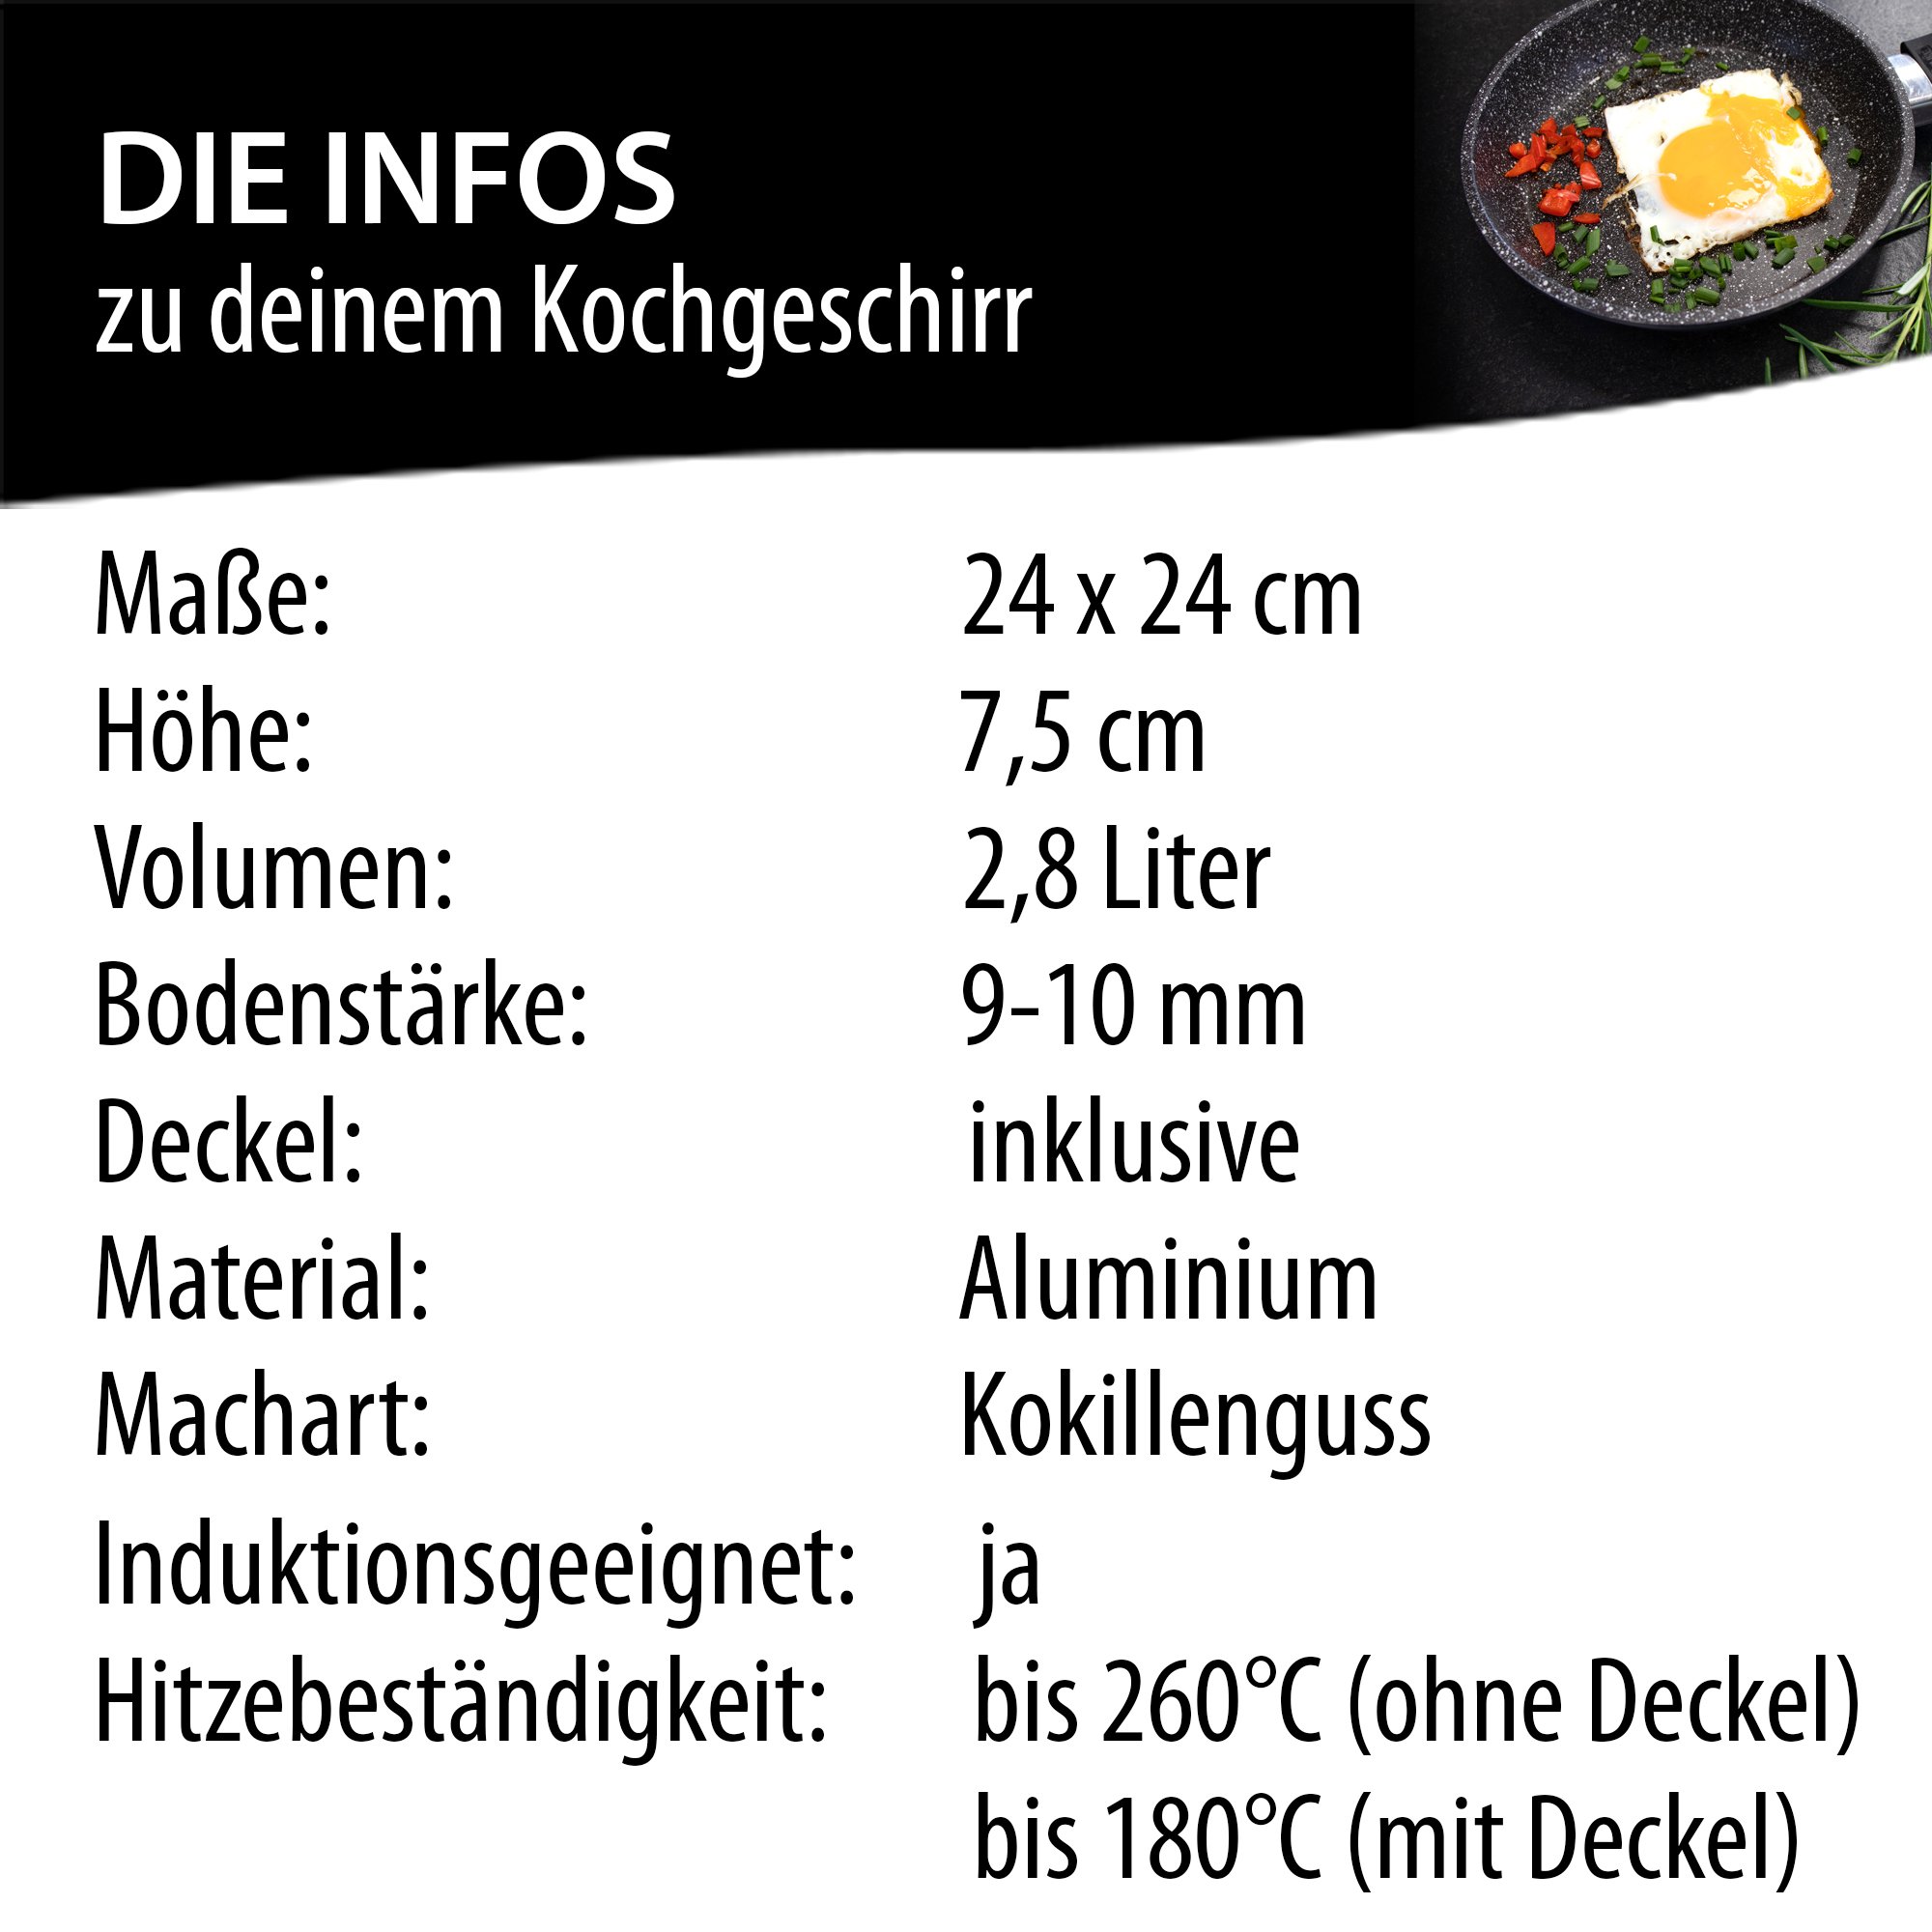 STONELINE® Servierpfanne 24 x 24 cm, Made in Germany, Kokillenguss Eckpfanne, Induktion und backofengeeignet